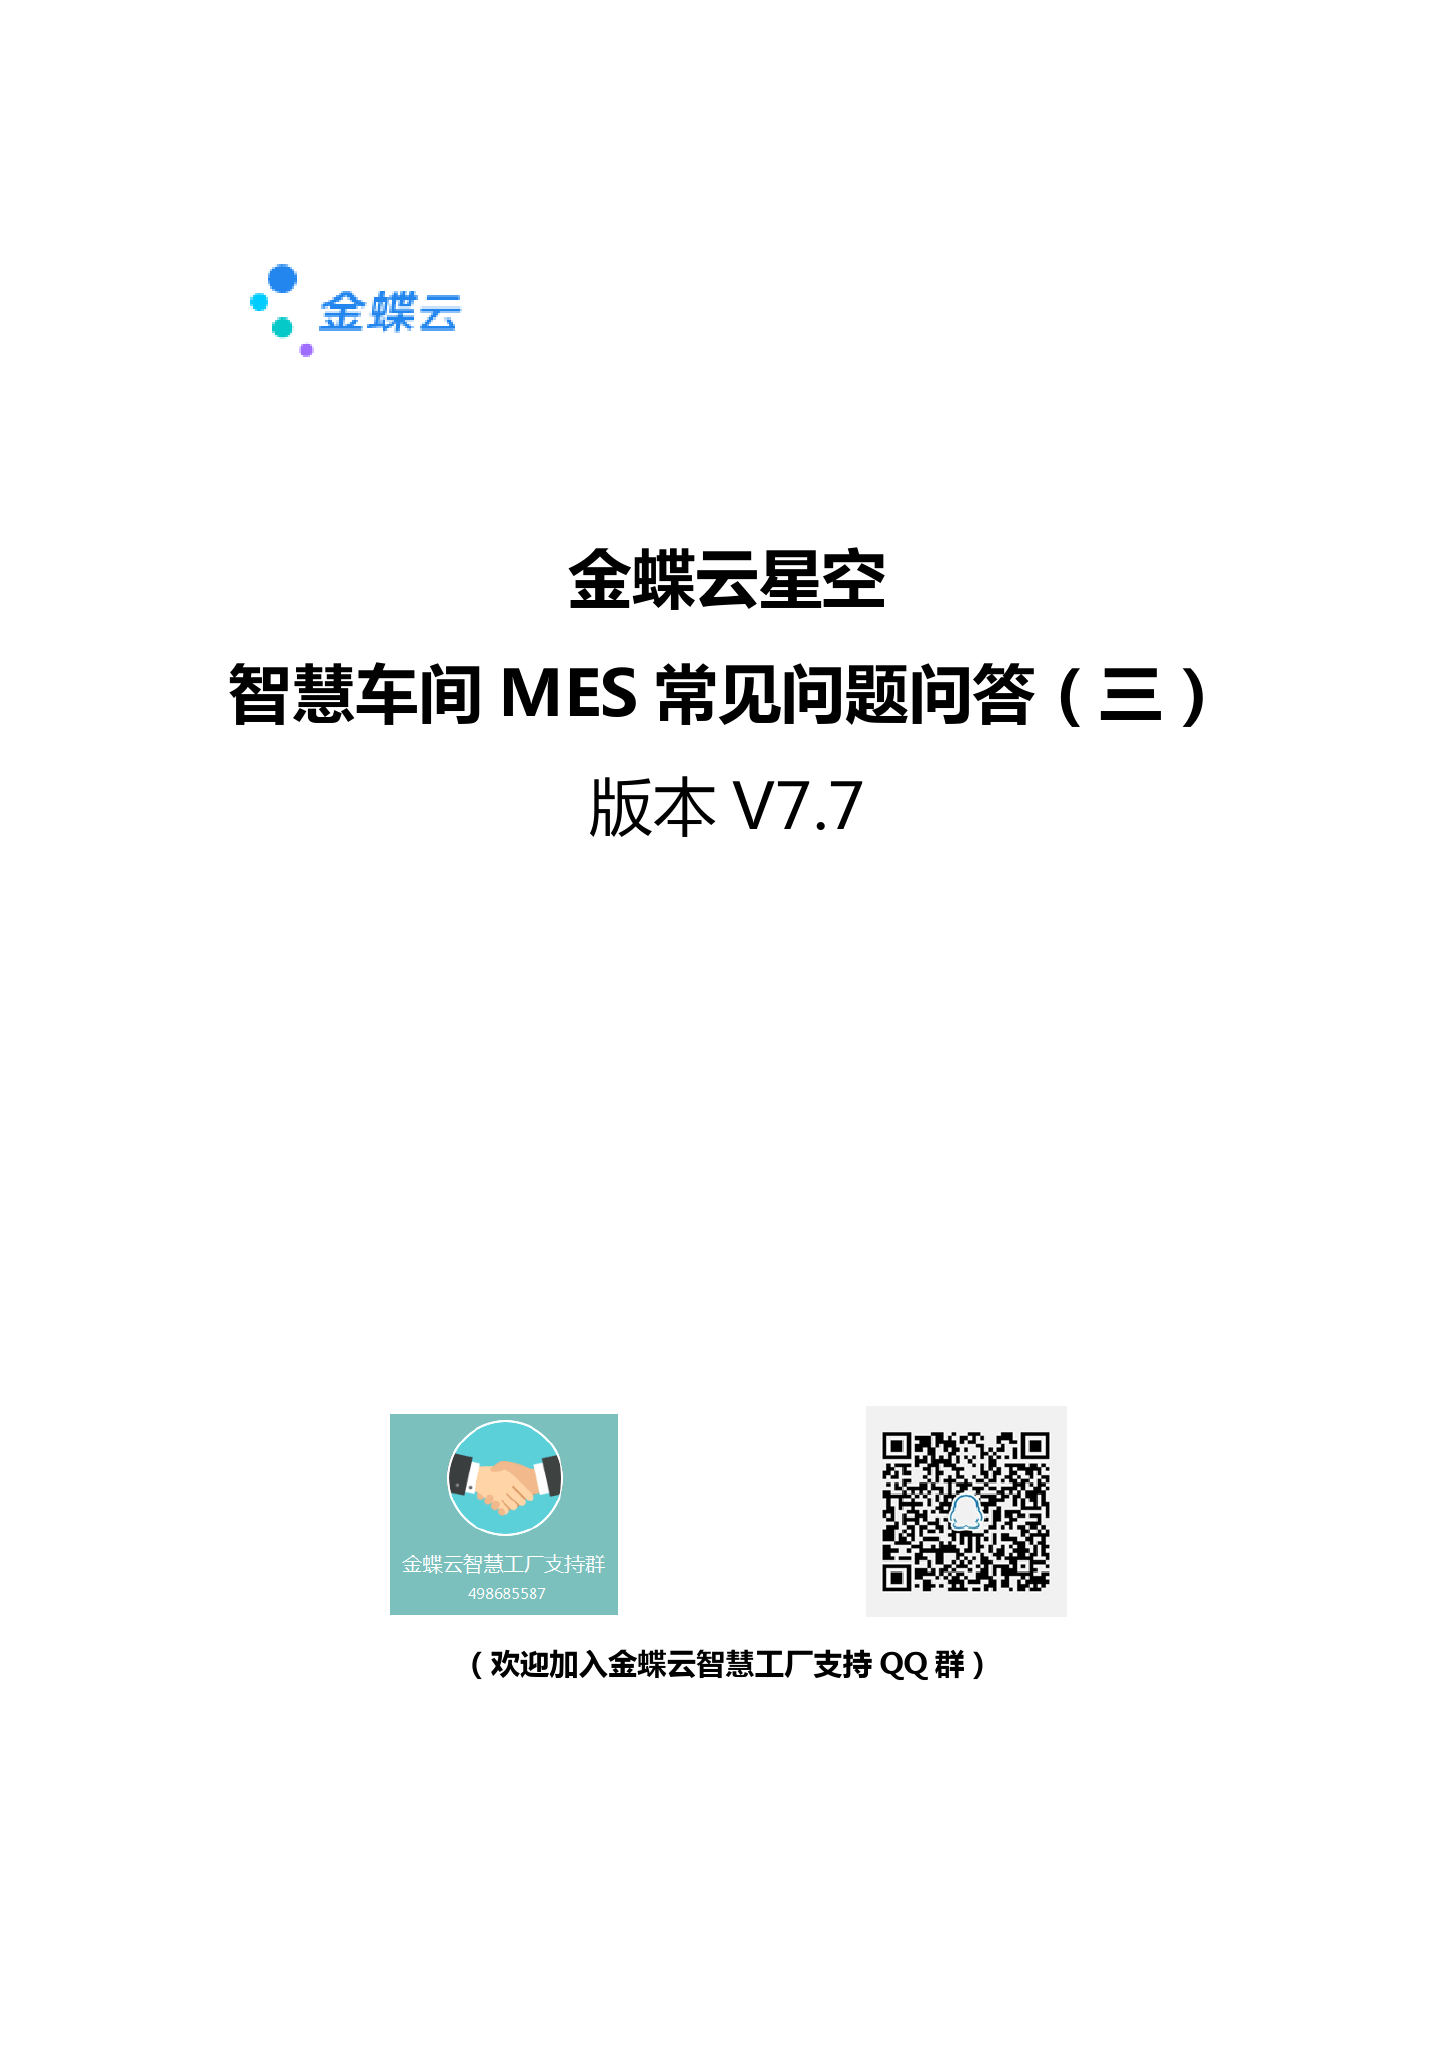 金蝶云社区-智慧车间MES常见问题问答(三)V7.7